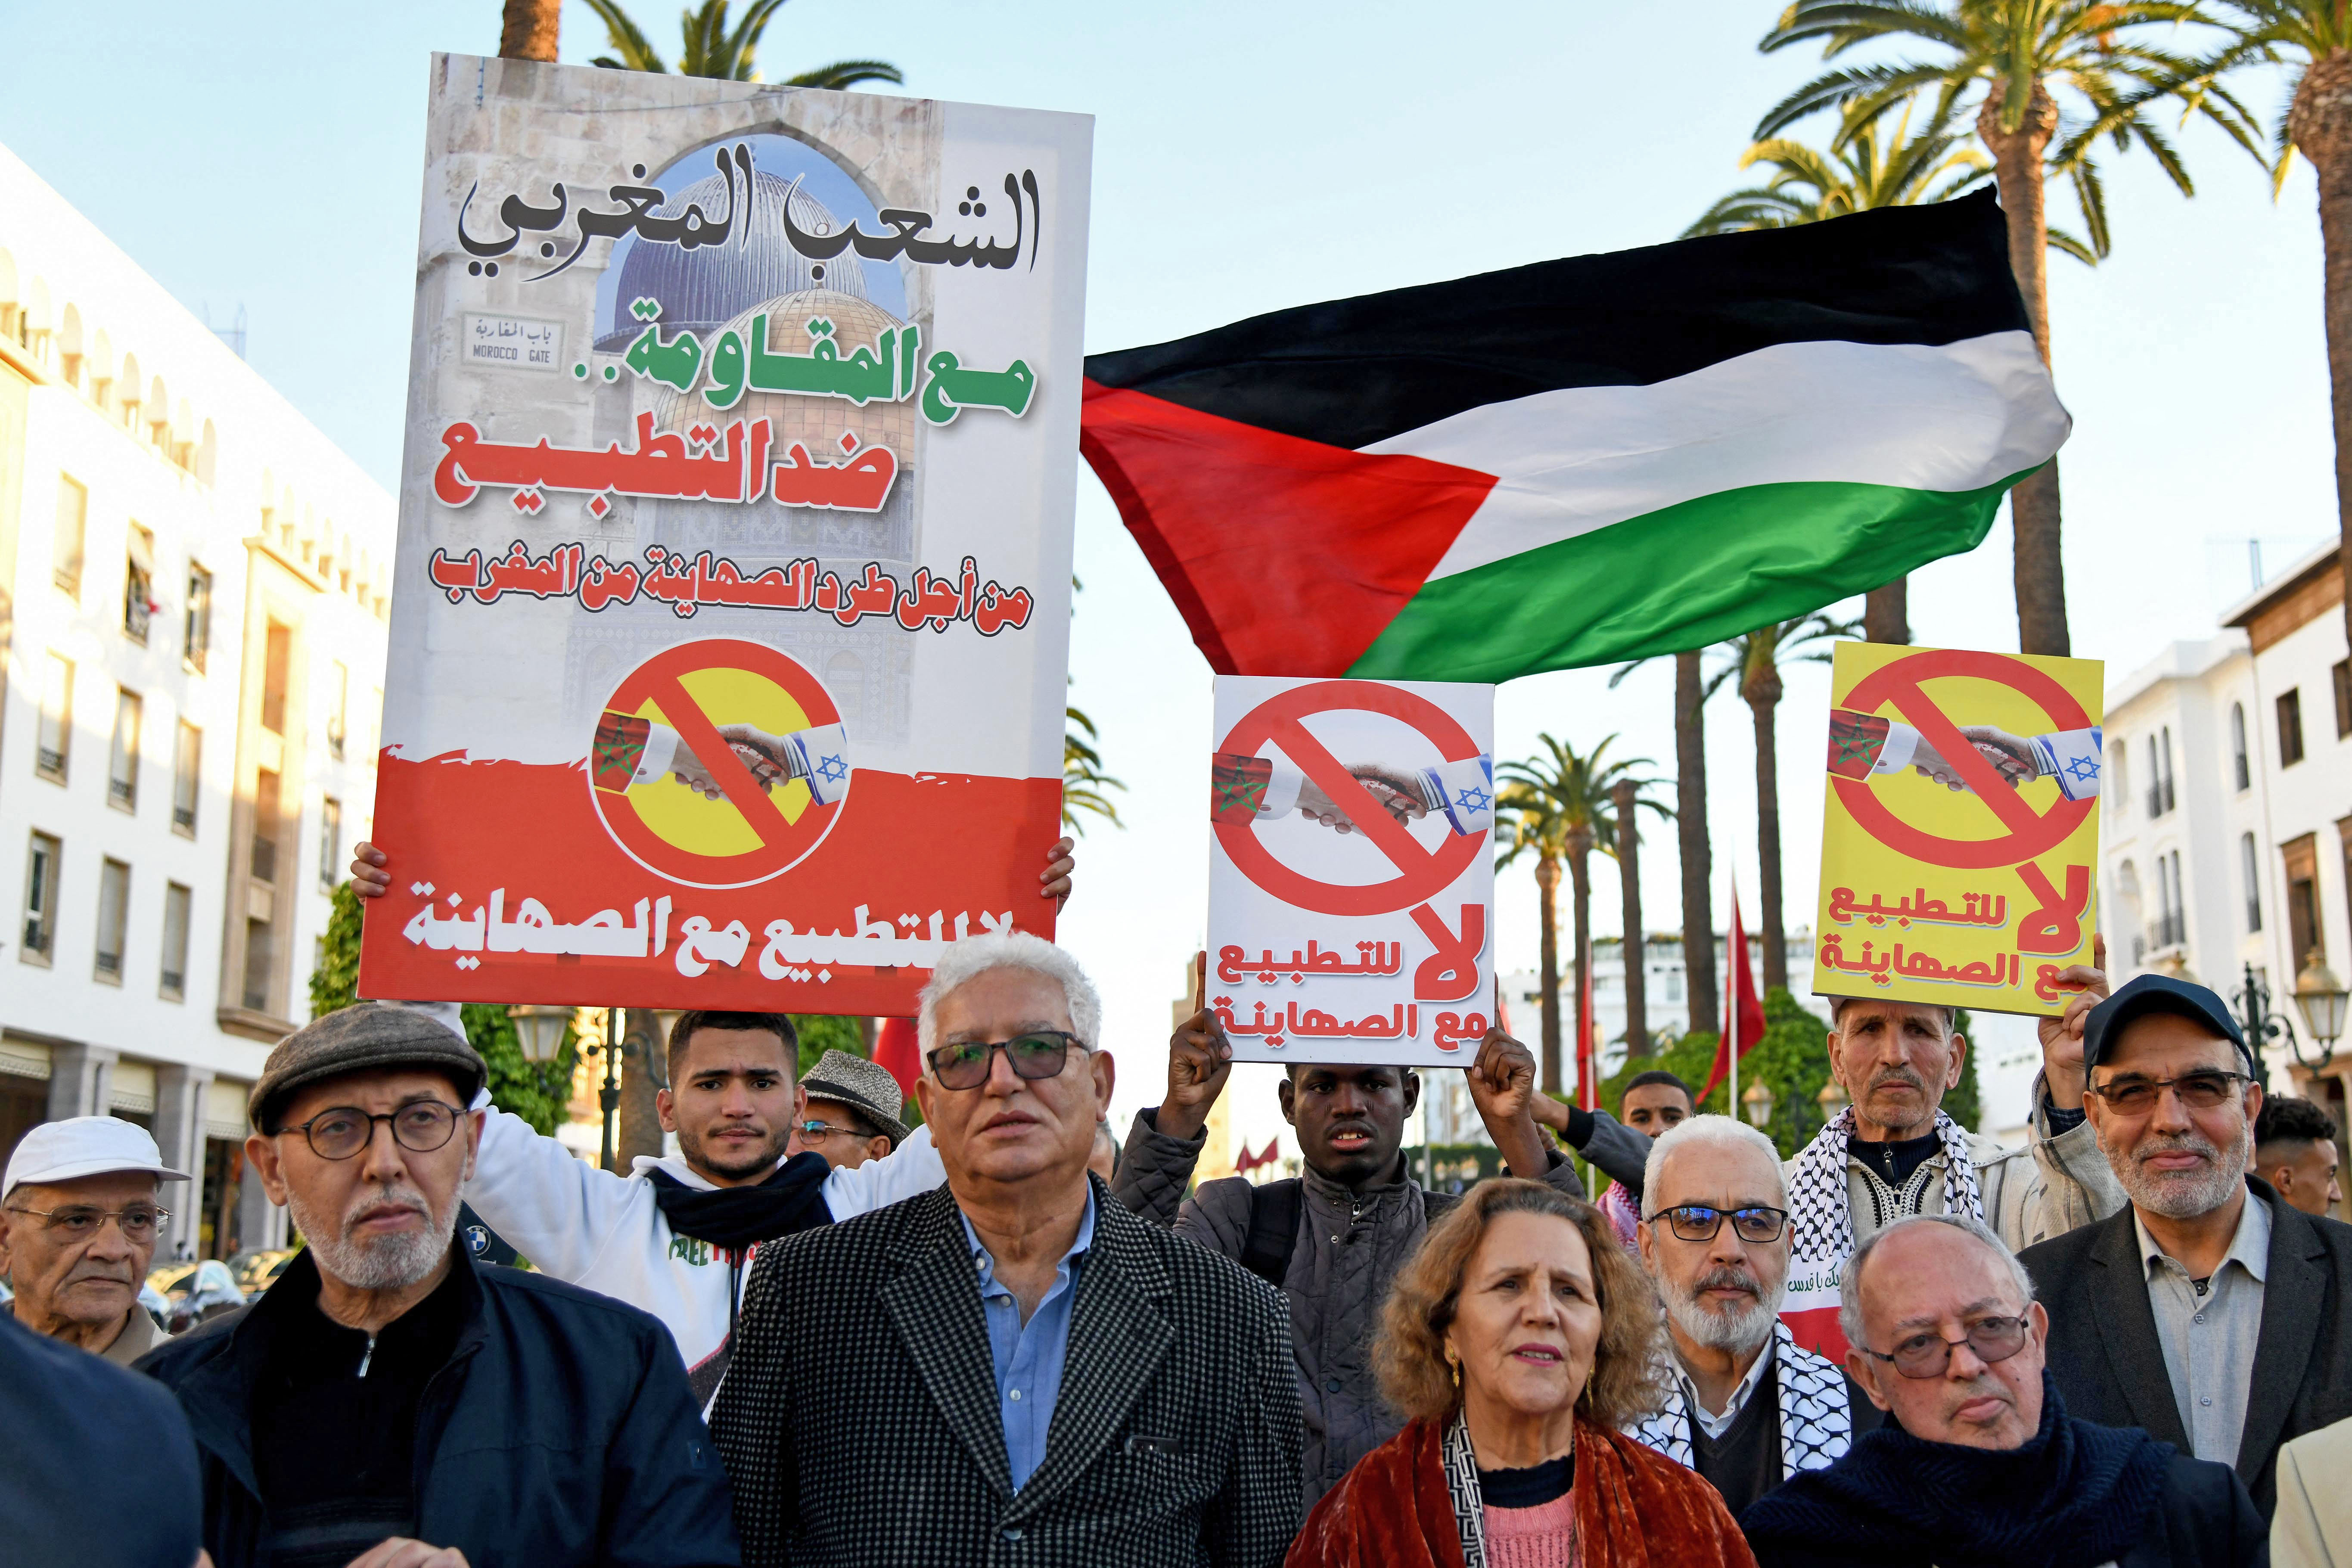 إن التطبيع العربي مع إسرائيل يعزز الاستعمار الاستيطاني الصهيوني والفصل العنصري